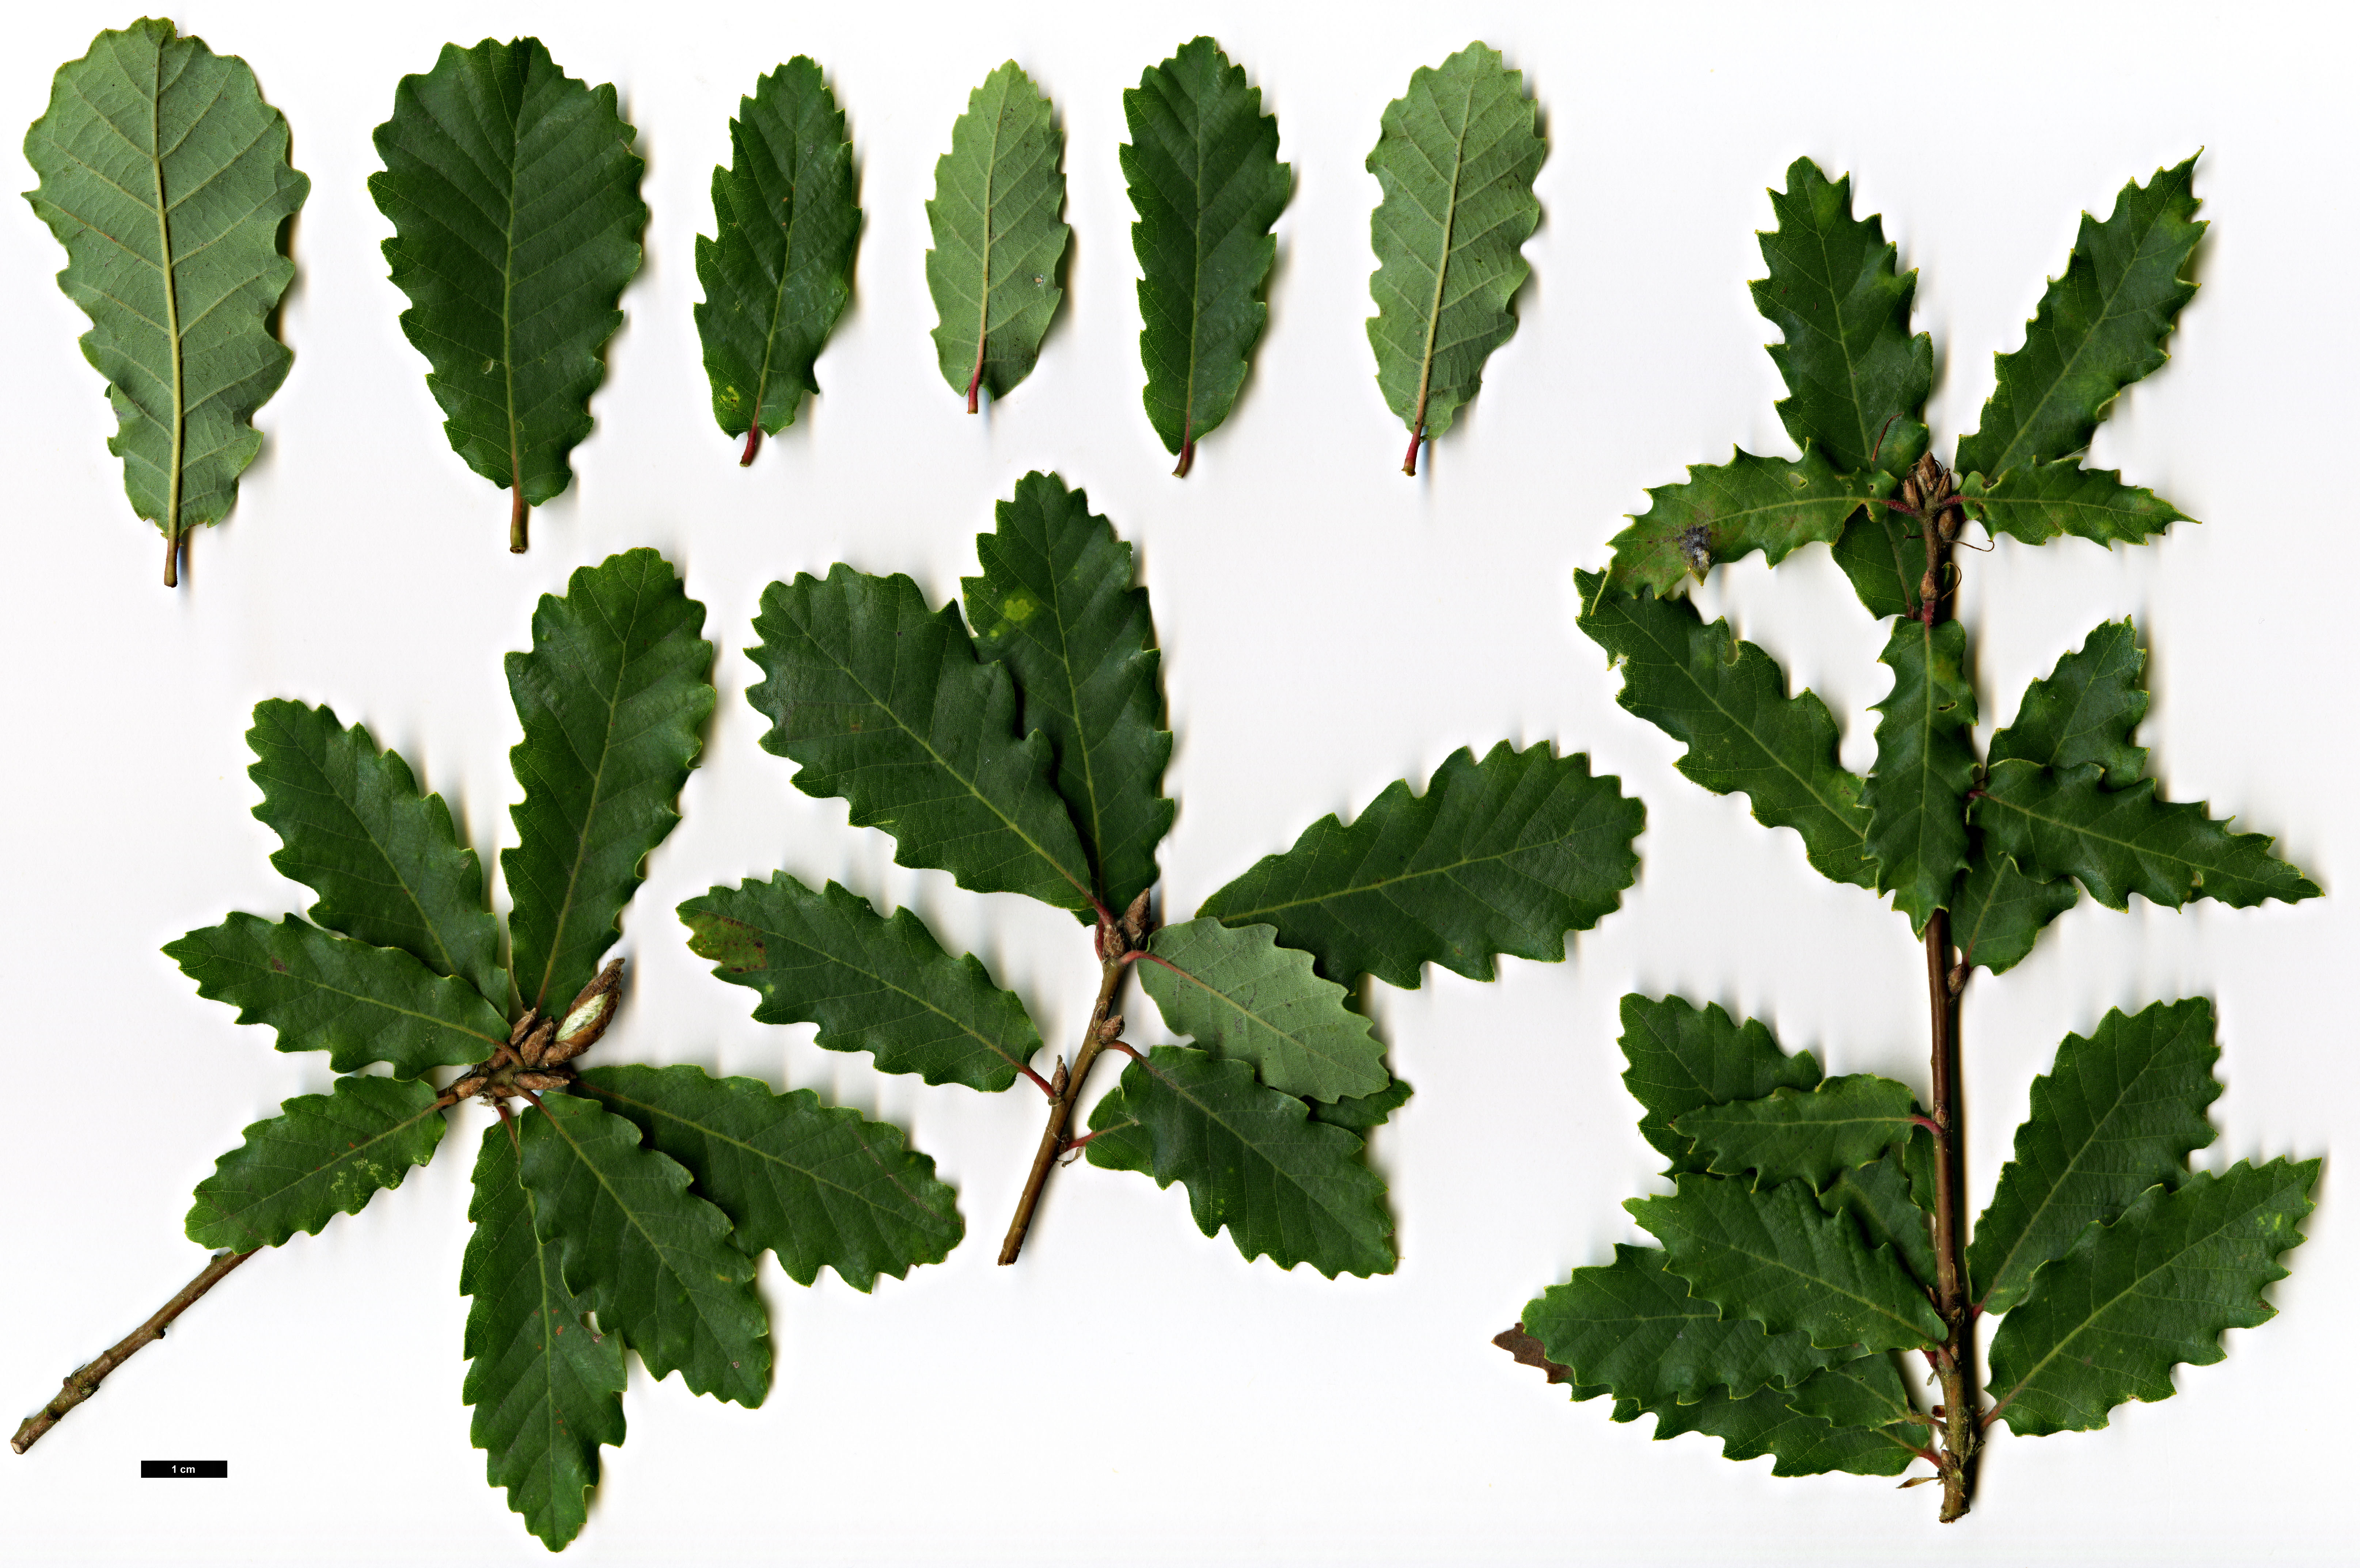 High resolution image: Family: Fagaceae - Genus: Quercus - Taxon: faginea - SpeciesSub: subsp. alpestris